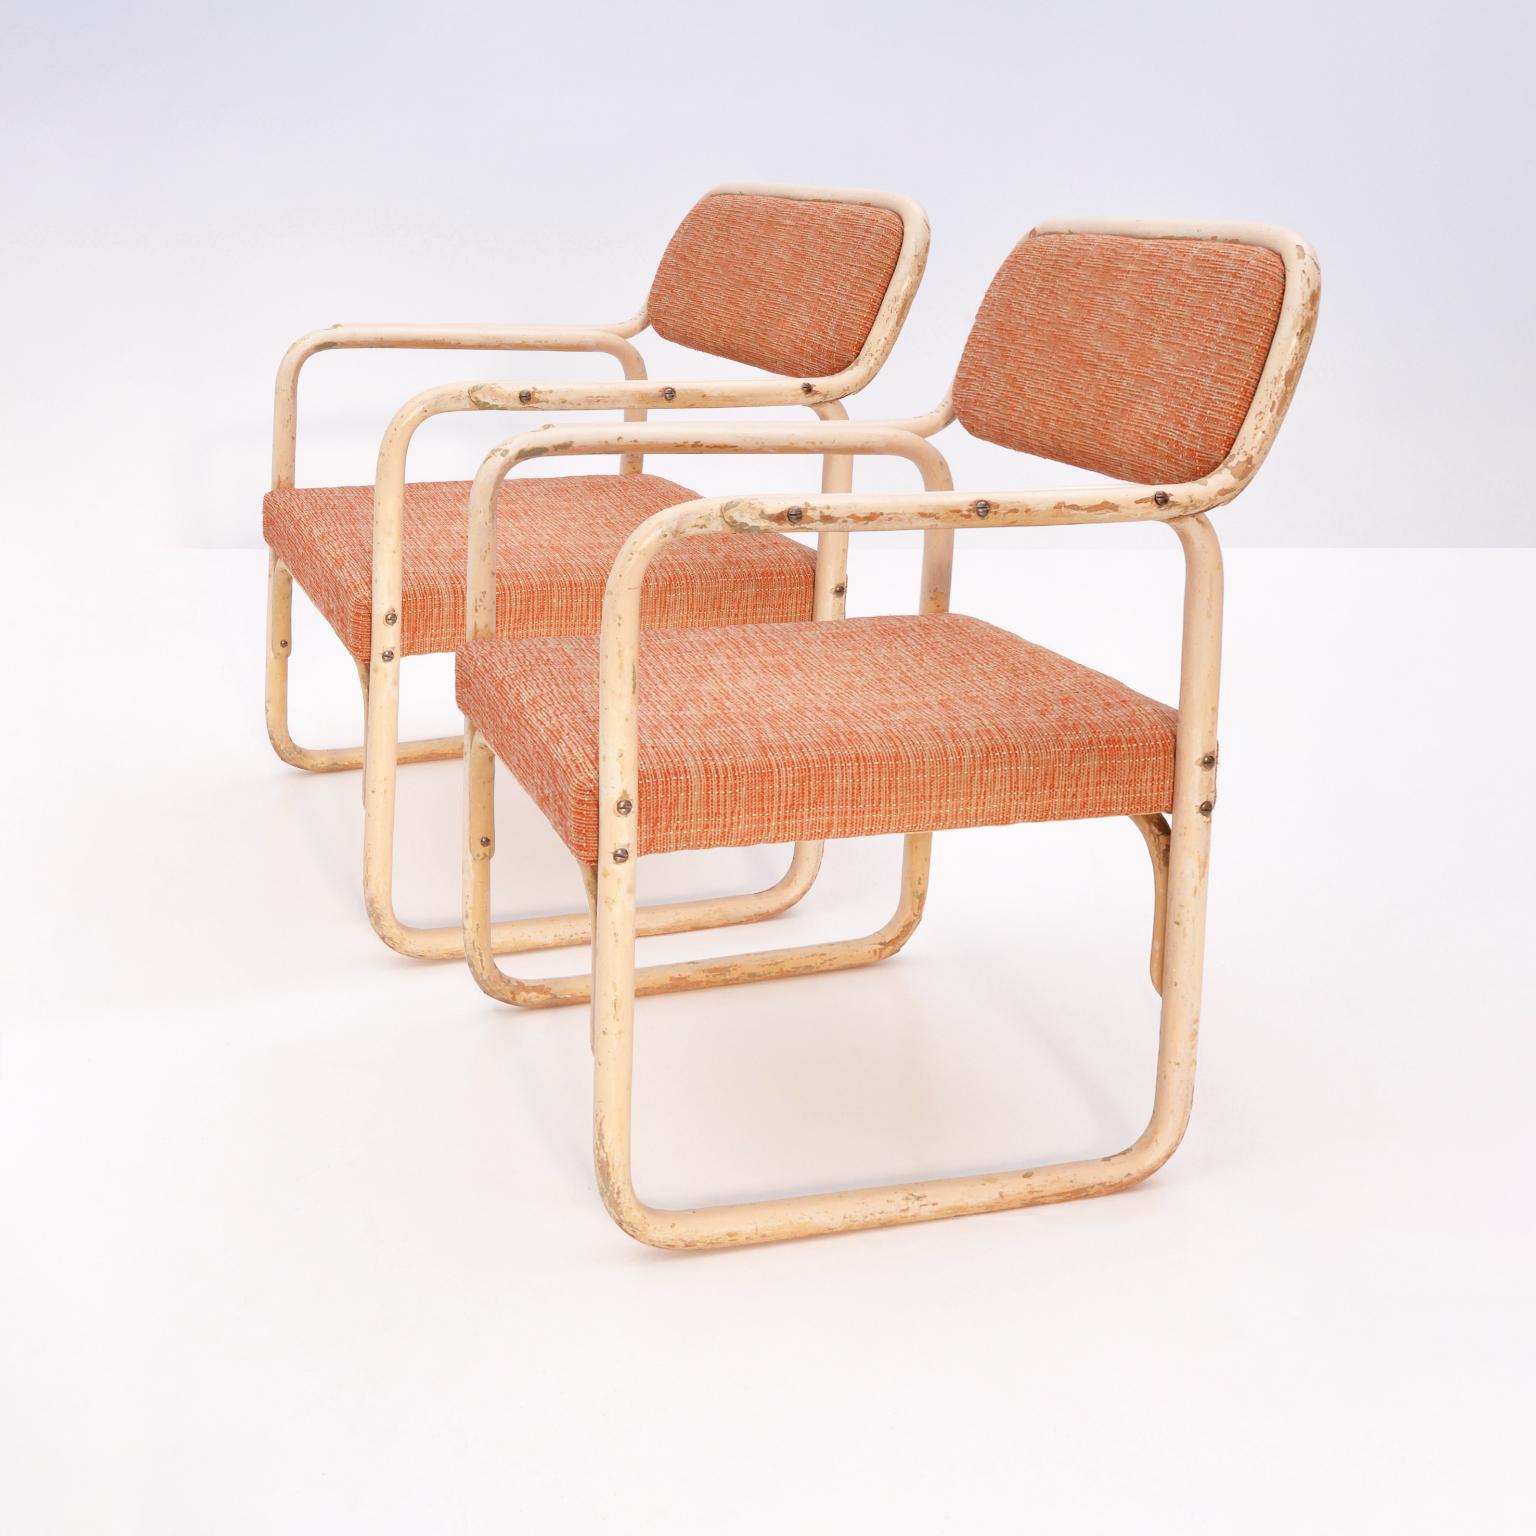 Paire de fauteuils modernistes de style Bauhaus. Le grand fauteuil en bois courbé laqué figure dans le catalogue de Thonet-Mundus de 1929 avec un rocking-chair, un tabouret et une table. Son apparence laisse à peine deviner qu'il est en bois bardé